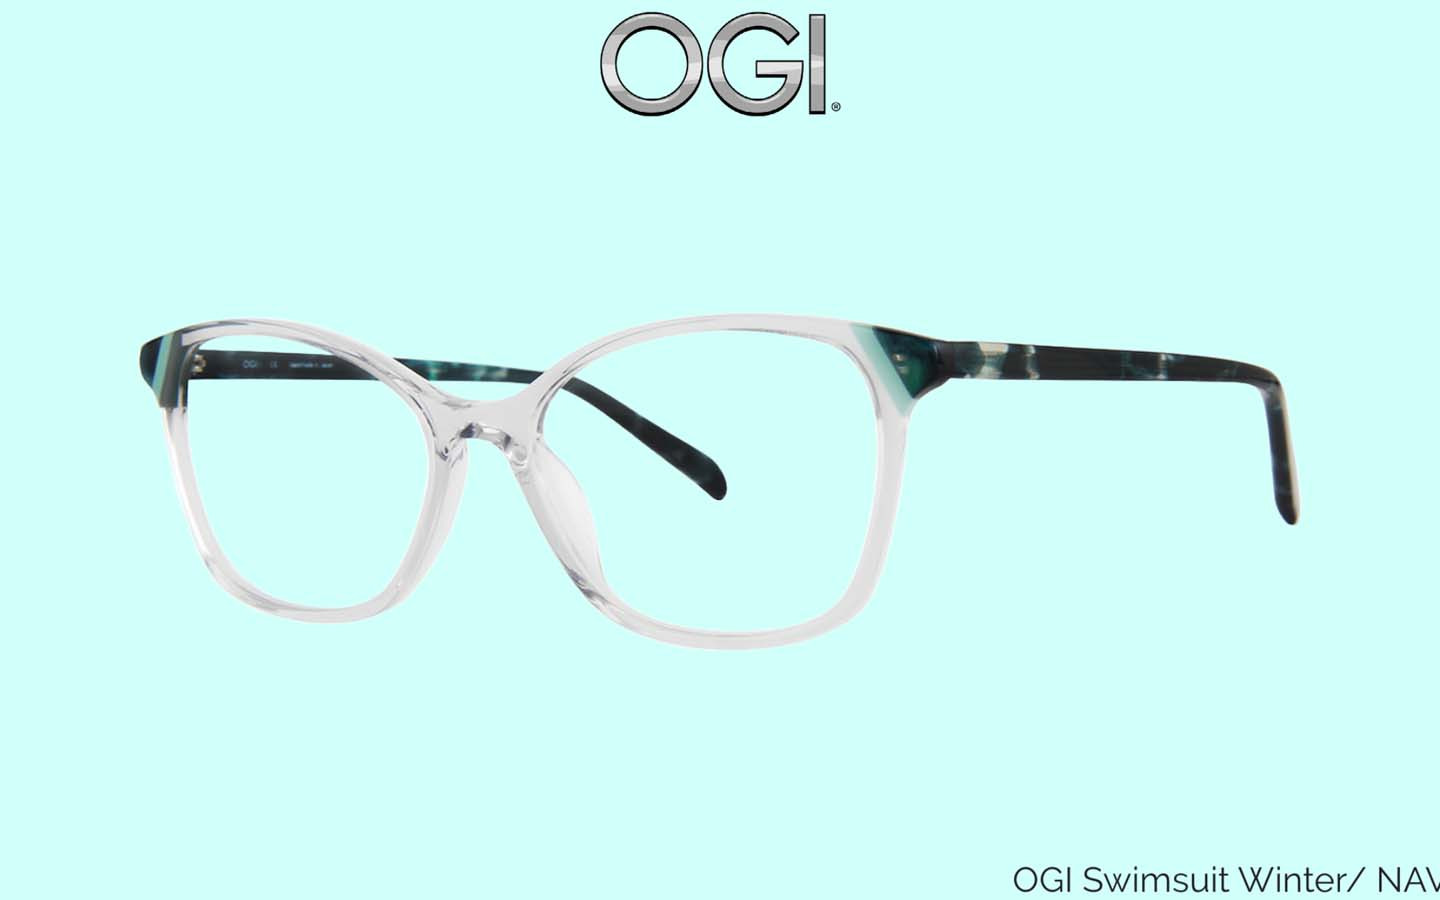 OGI eyewear